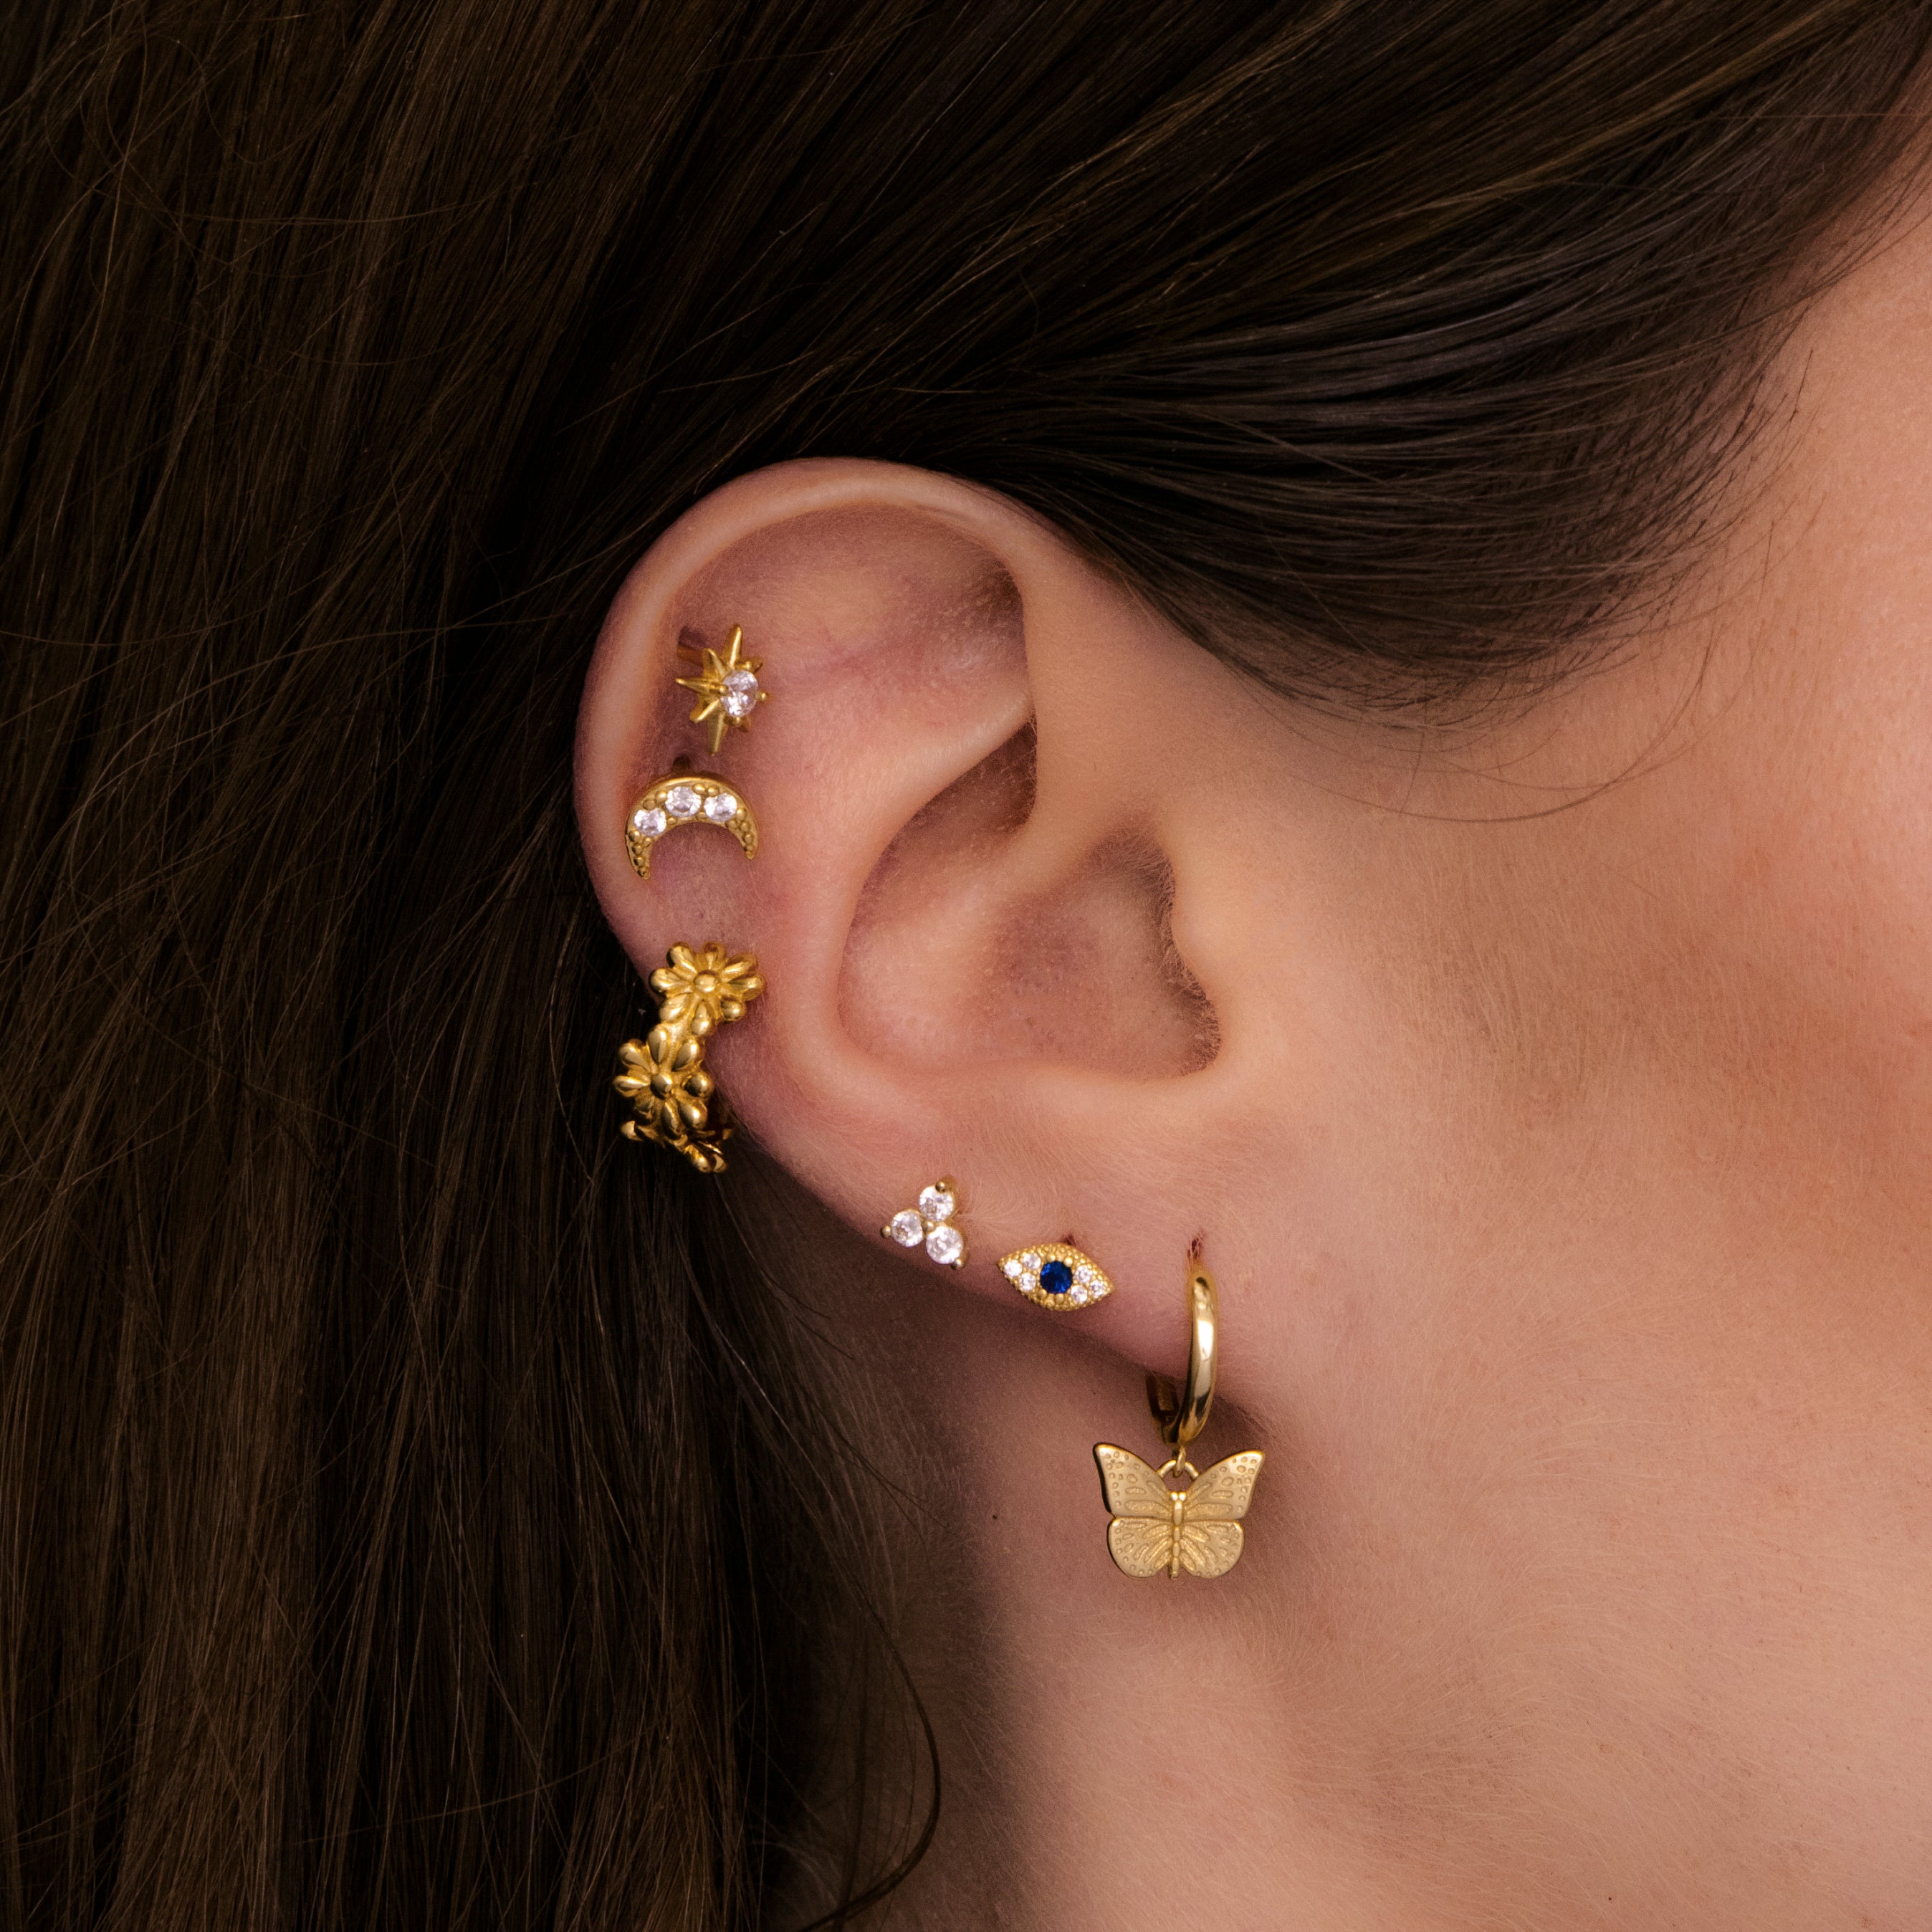 Daisy Ear Cuff Earrings